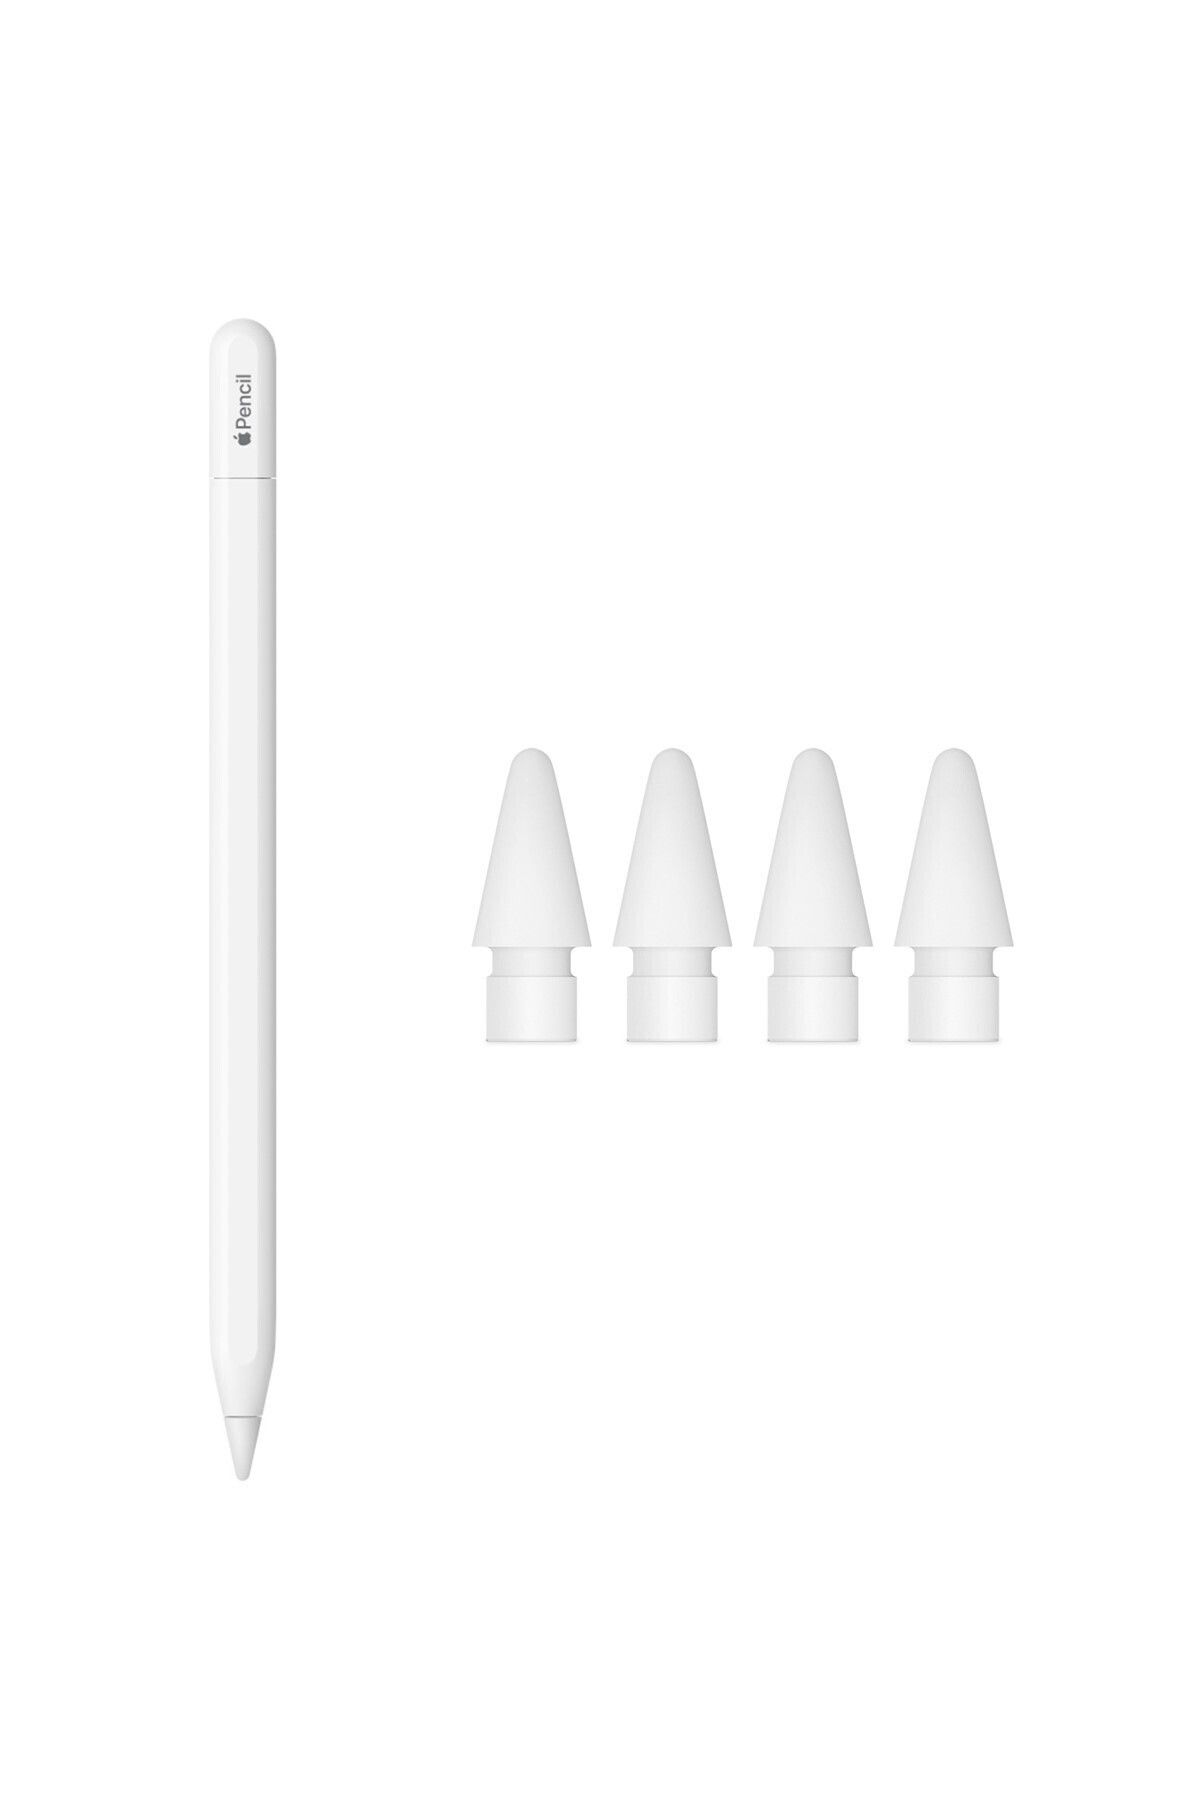 Apple Pencil Usb-c Ve 4'lü Paket Pencil Uçları ( Türkiye Garantili)